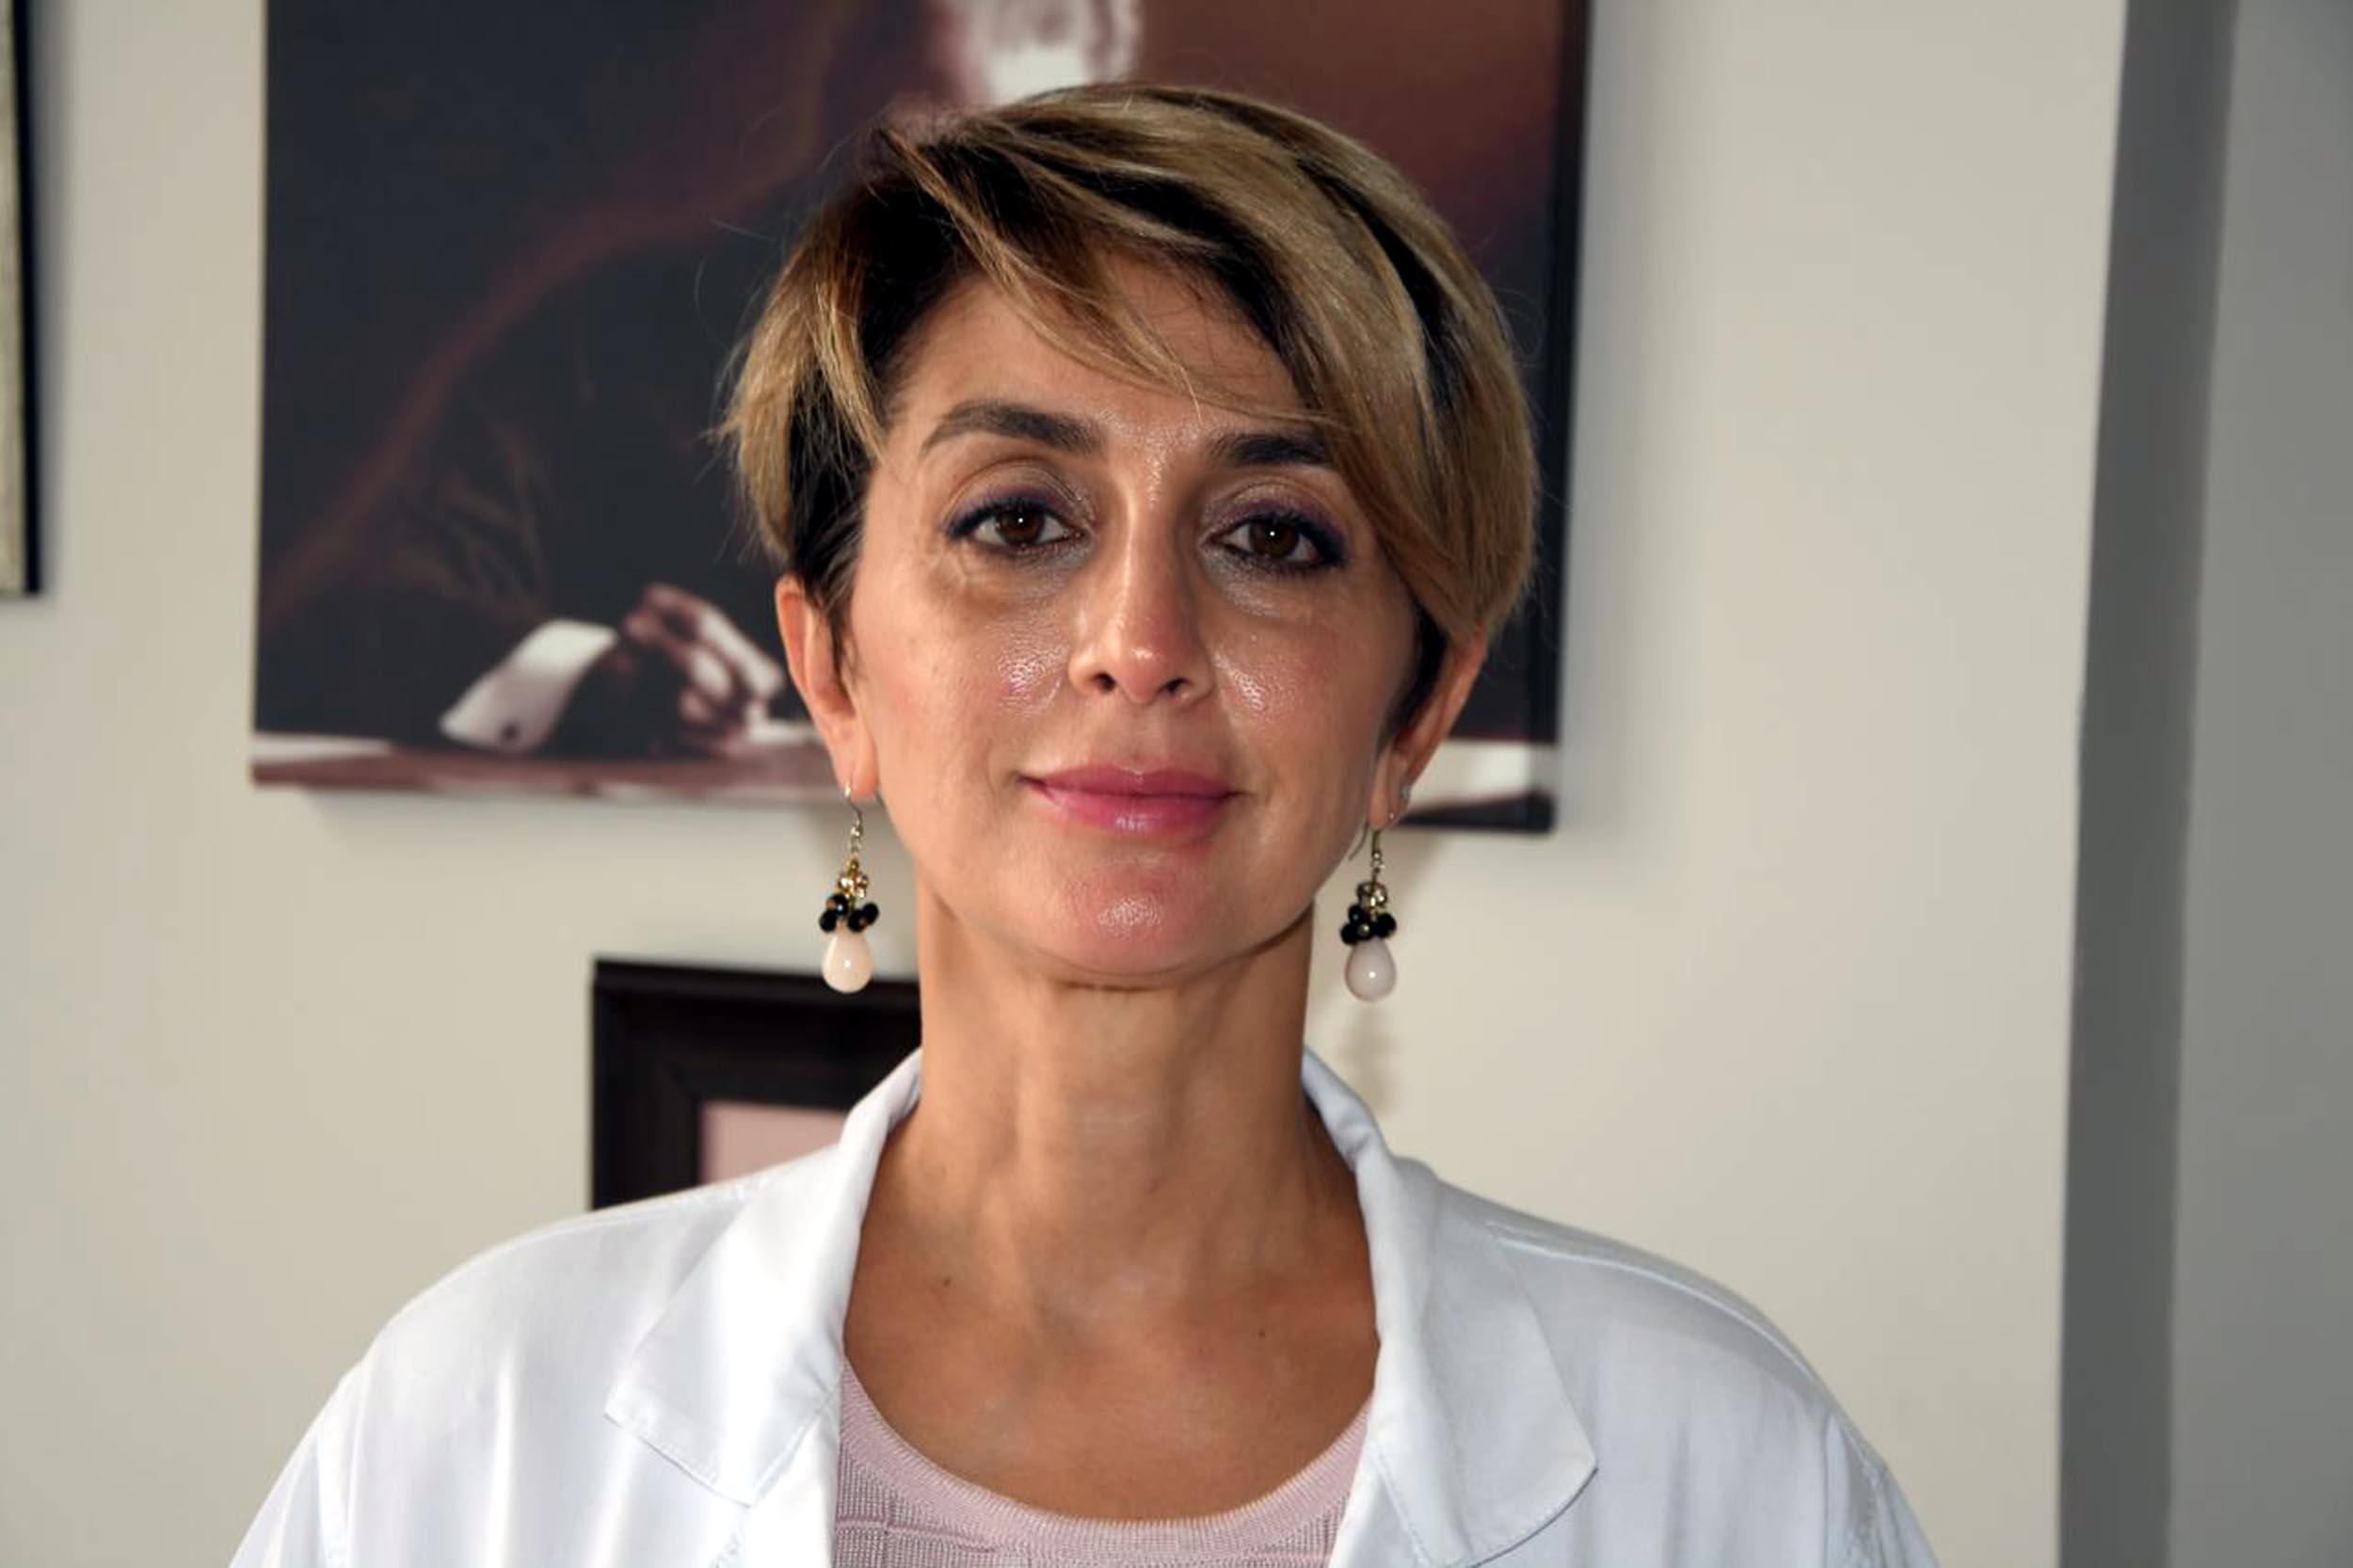 Doç. Dr. Varol: 1 yılda 25 bin kadına meme kanseri tanısı koyuldu